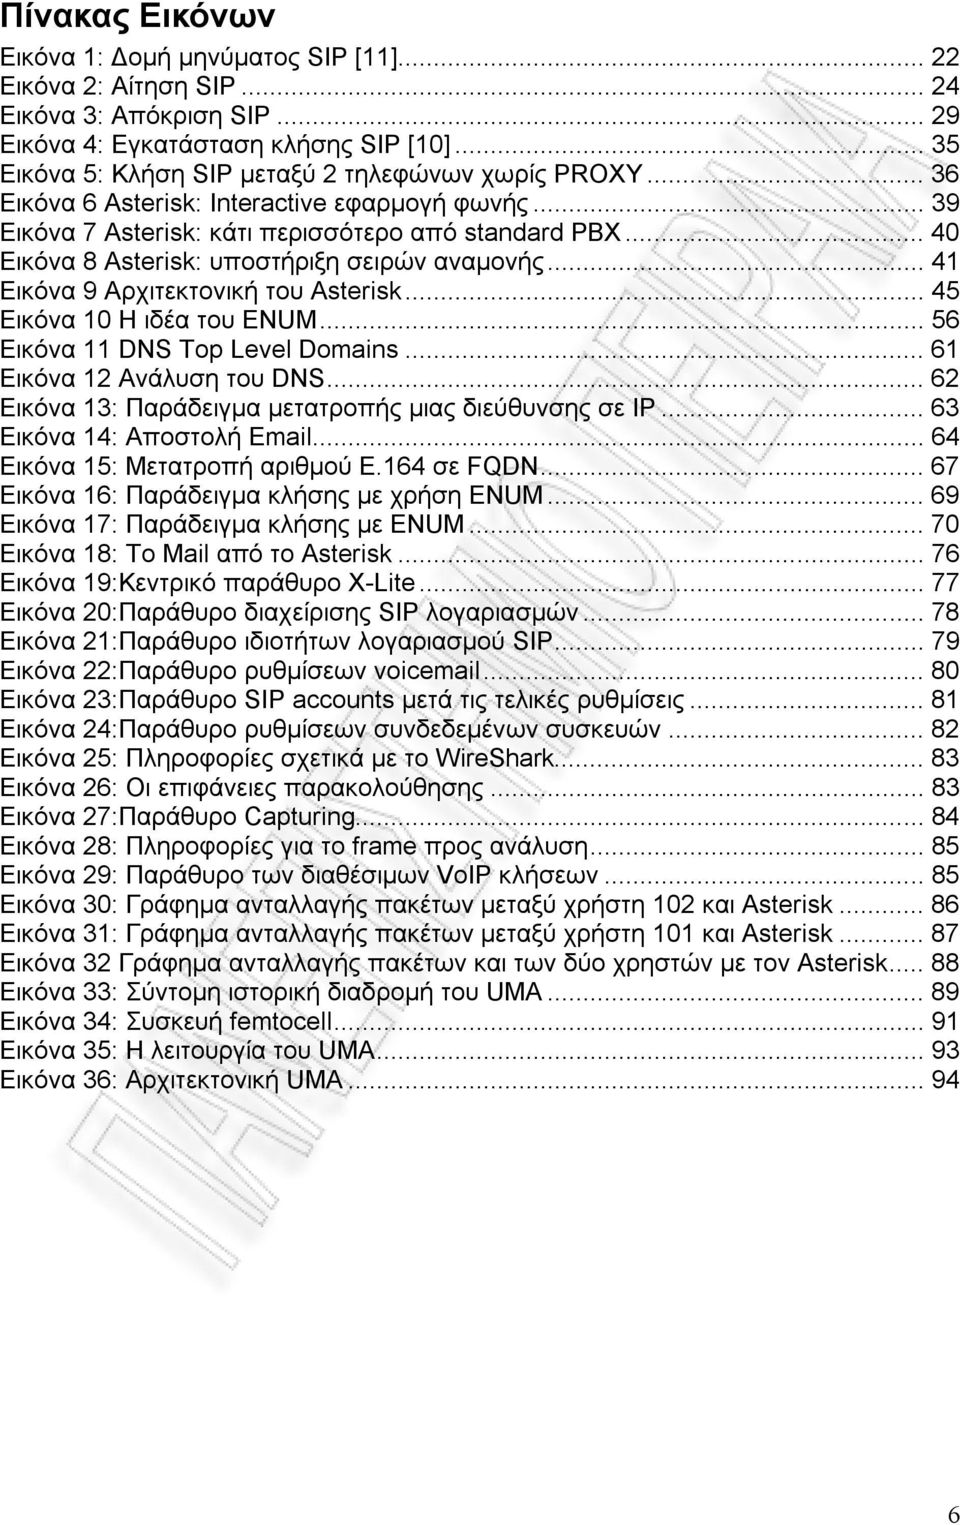 .. 40 Εικόνα 8 Asterisk: υποστήριξη σειρών αναµονής... 41 Εικόνα 9 Αρχιτεκτονική του Asterisk... 45 Εικόνα 10 Η ιδέα του ENUM... 56 Εικόνα 11 DNS Top Level Domains... 61 Εικόνα 12 Ανάλυση του DNS.